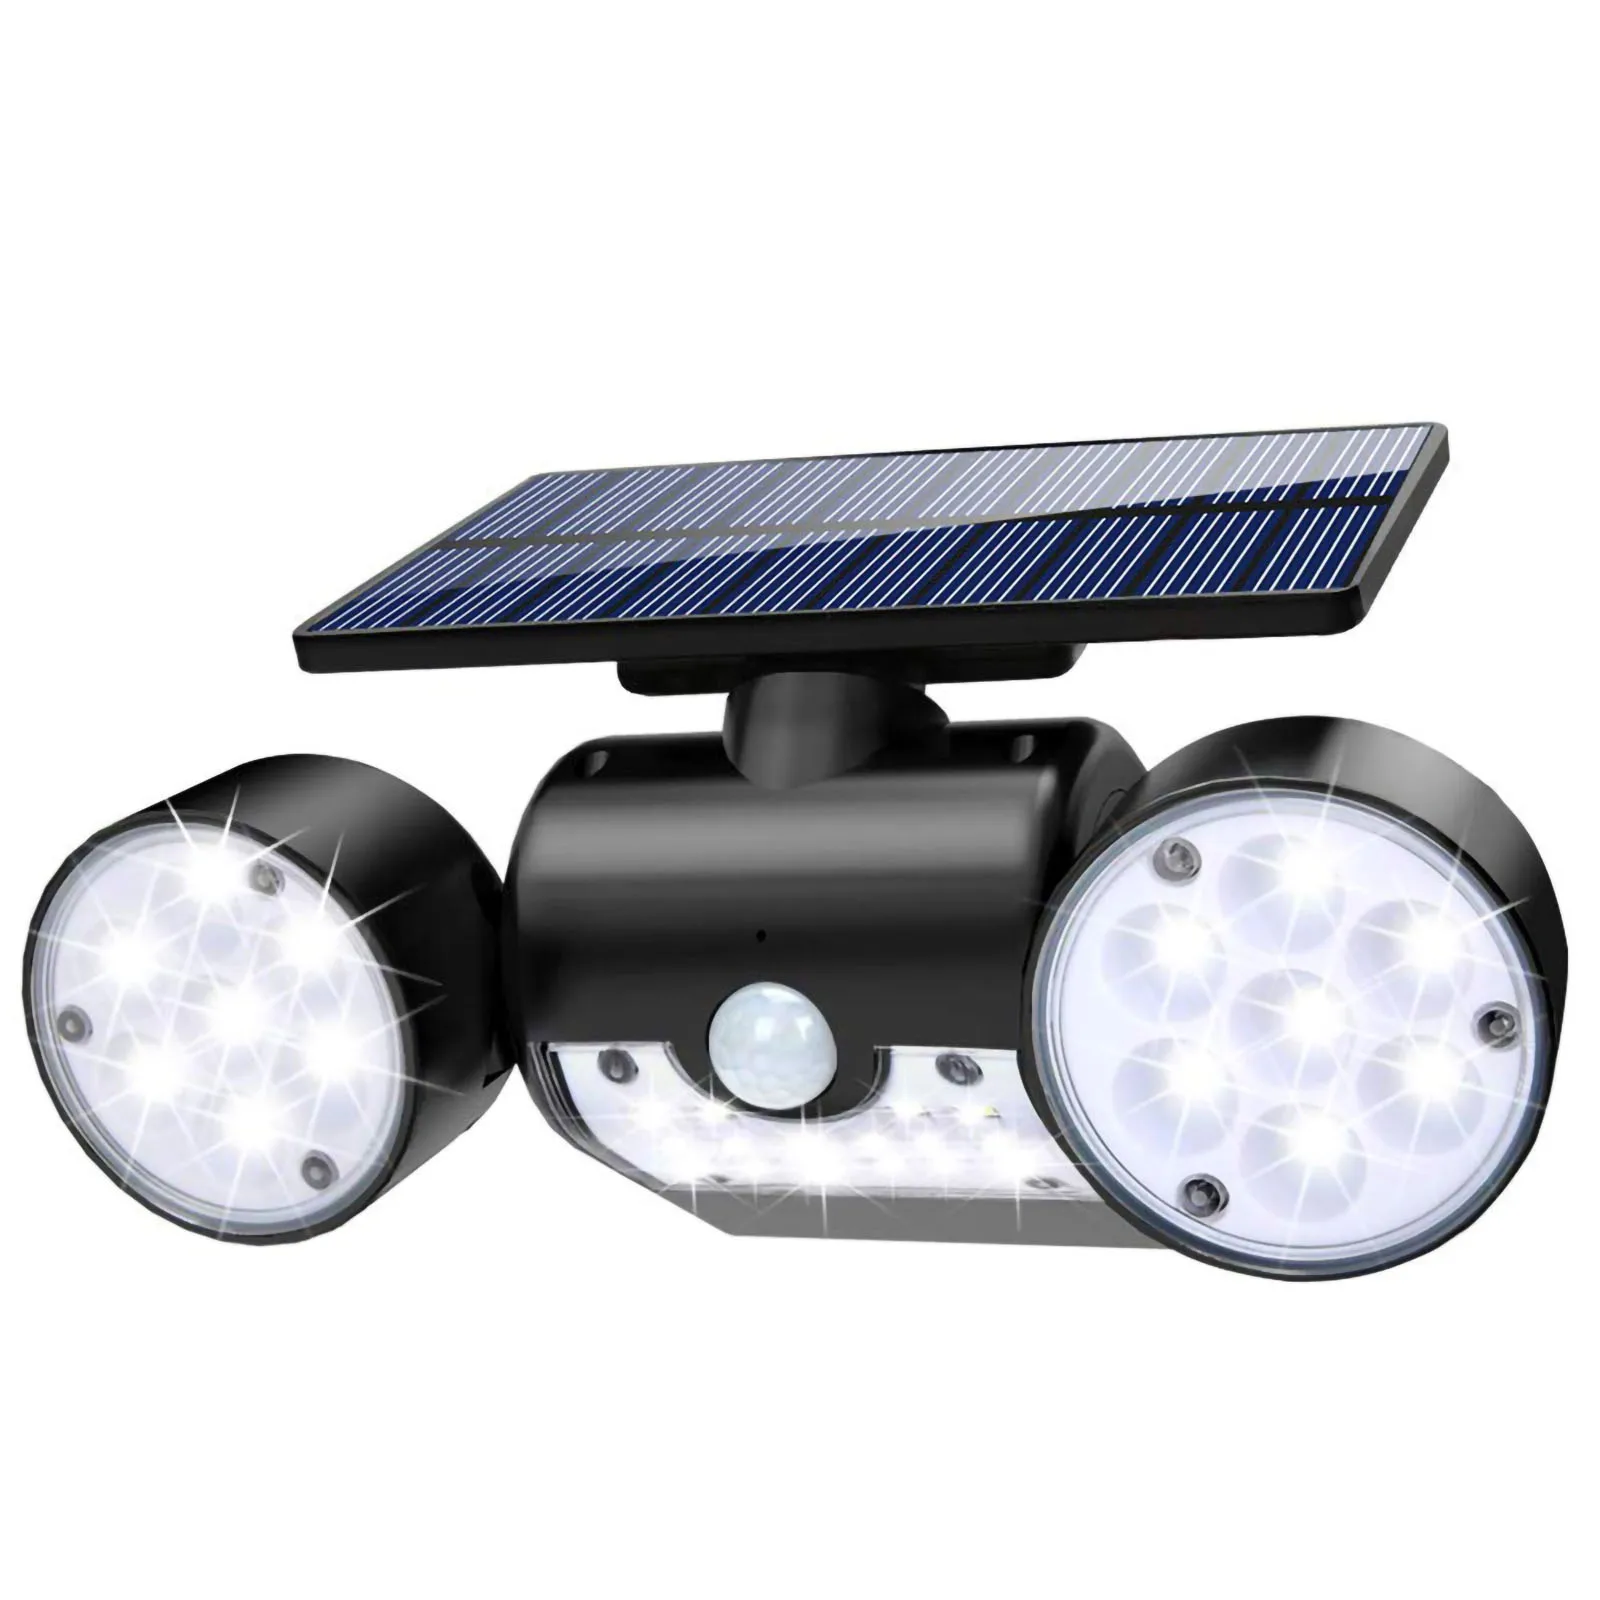 

30LED Solar Light Dual Head Solar Lamp PIR Motion Sensor Spotlight Waterproof Outdoor Adjustable Angle Lights For Garden Wall